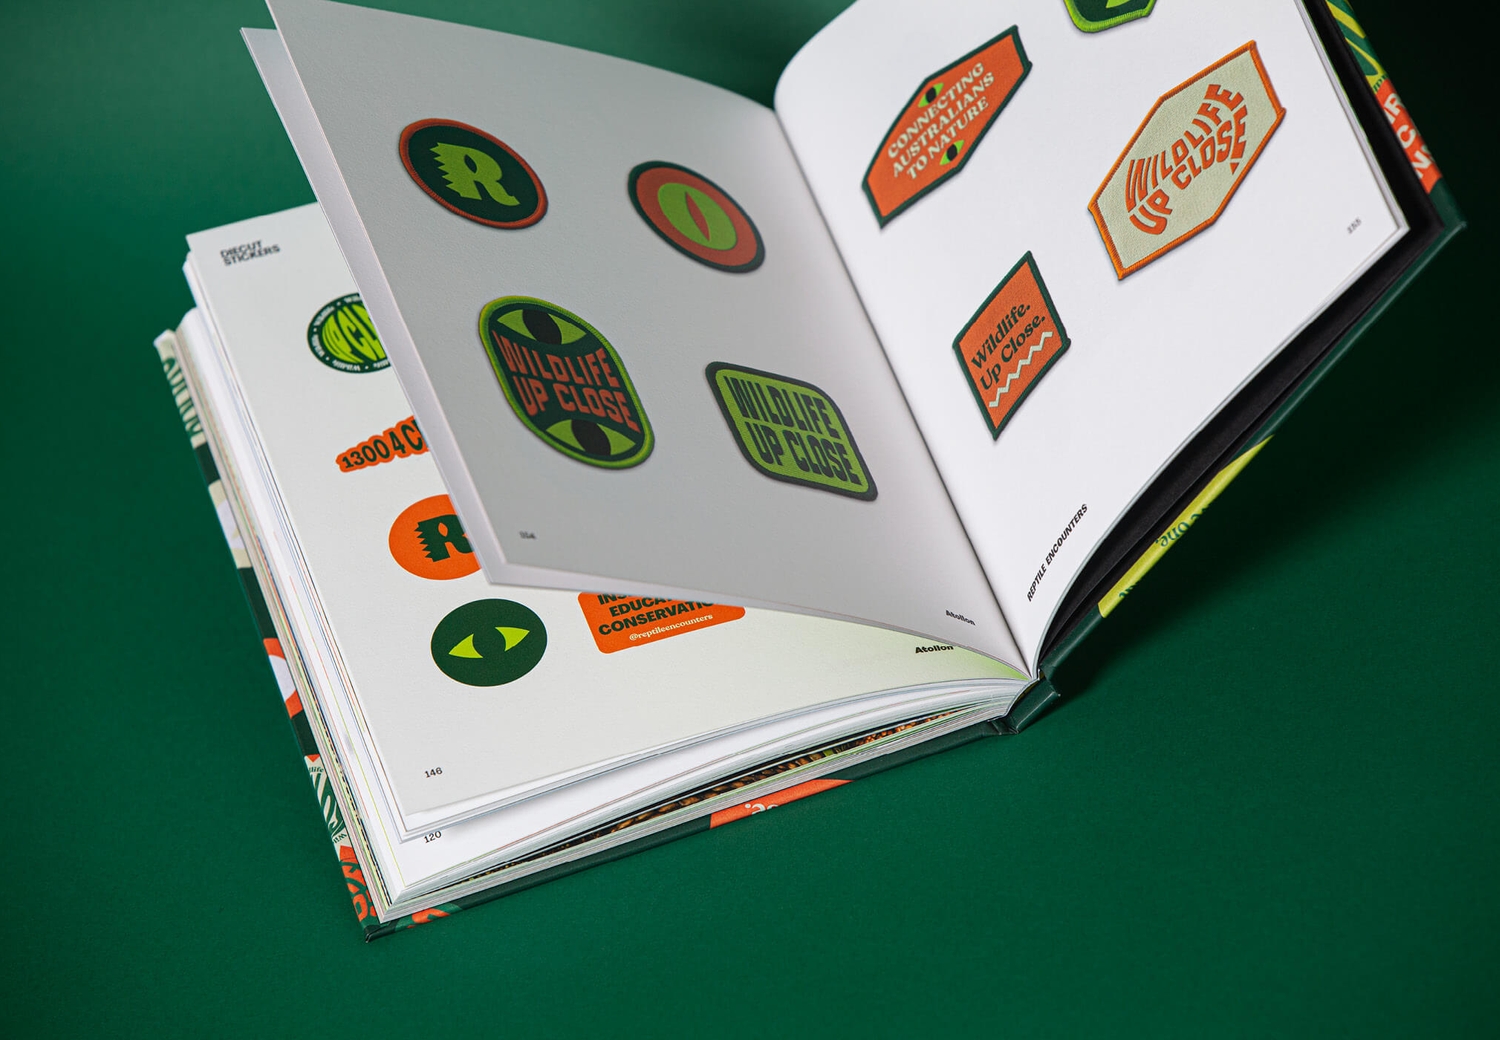 Reptile Encounters - Brandbook Internal Spread Patches | Atollon - a design company